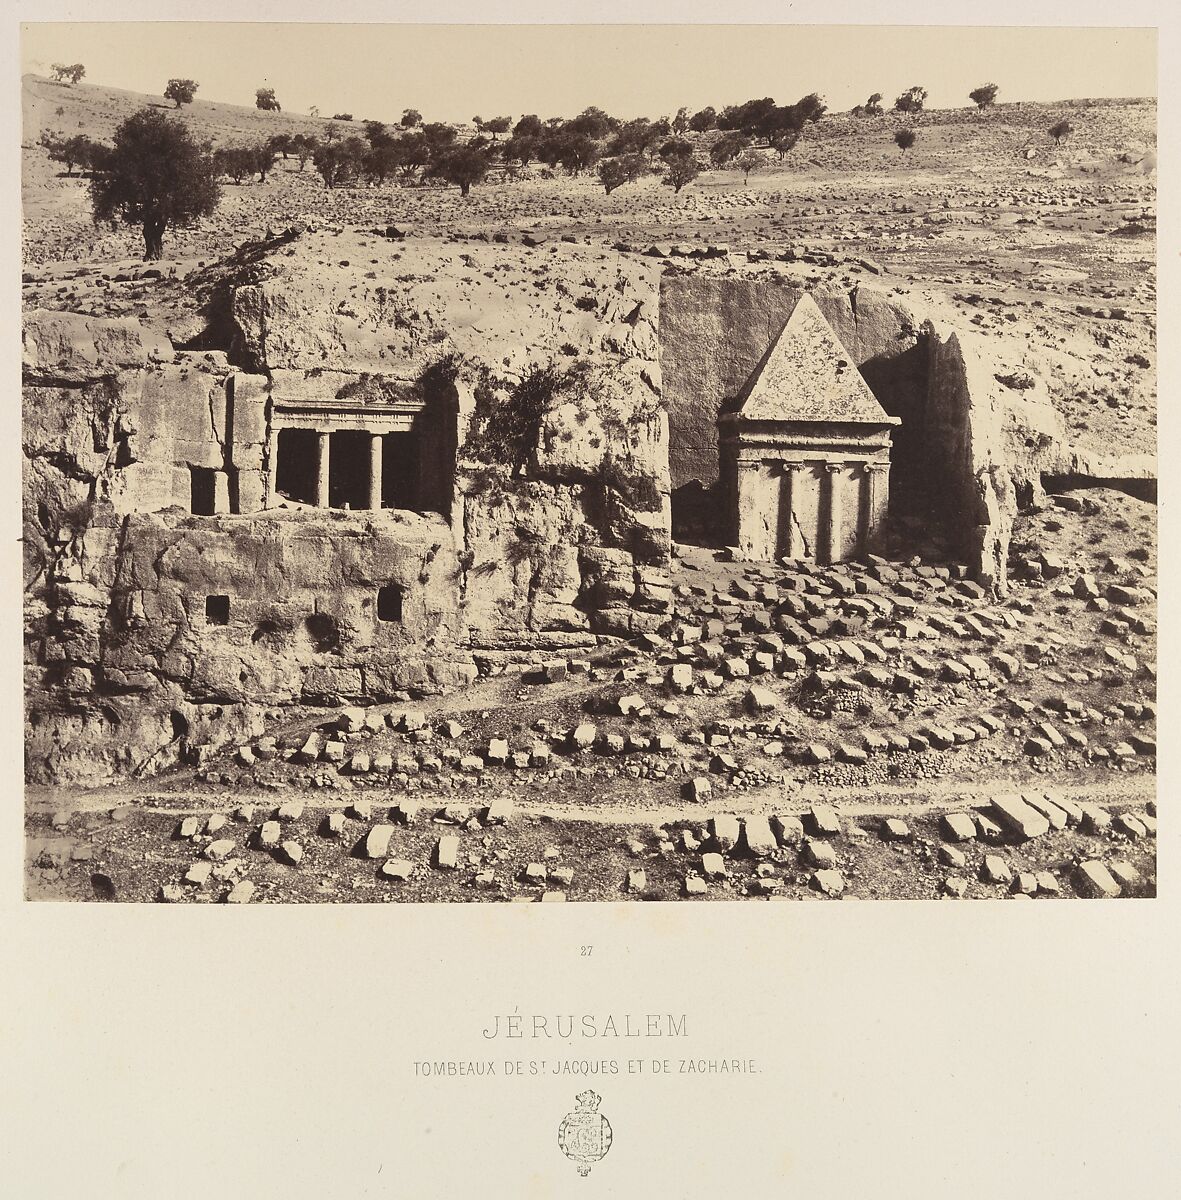 Jérusalem. Tombeaux de St Jacques et de Zacharie, Louis de Clercq (French, 1837–1901), Albumen silver print from paper negative 